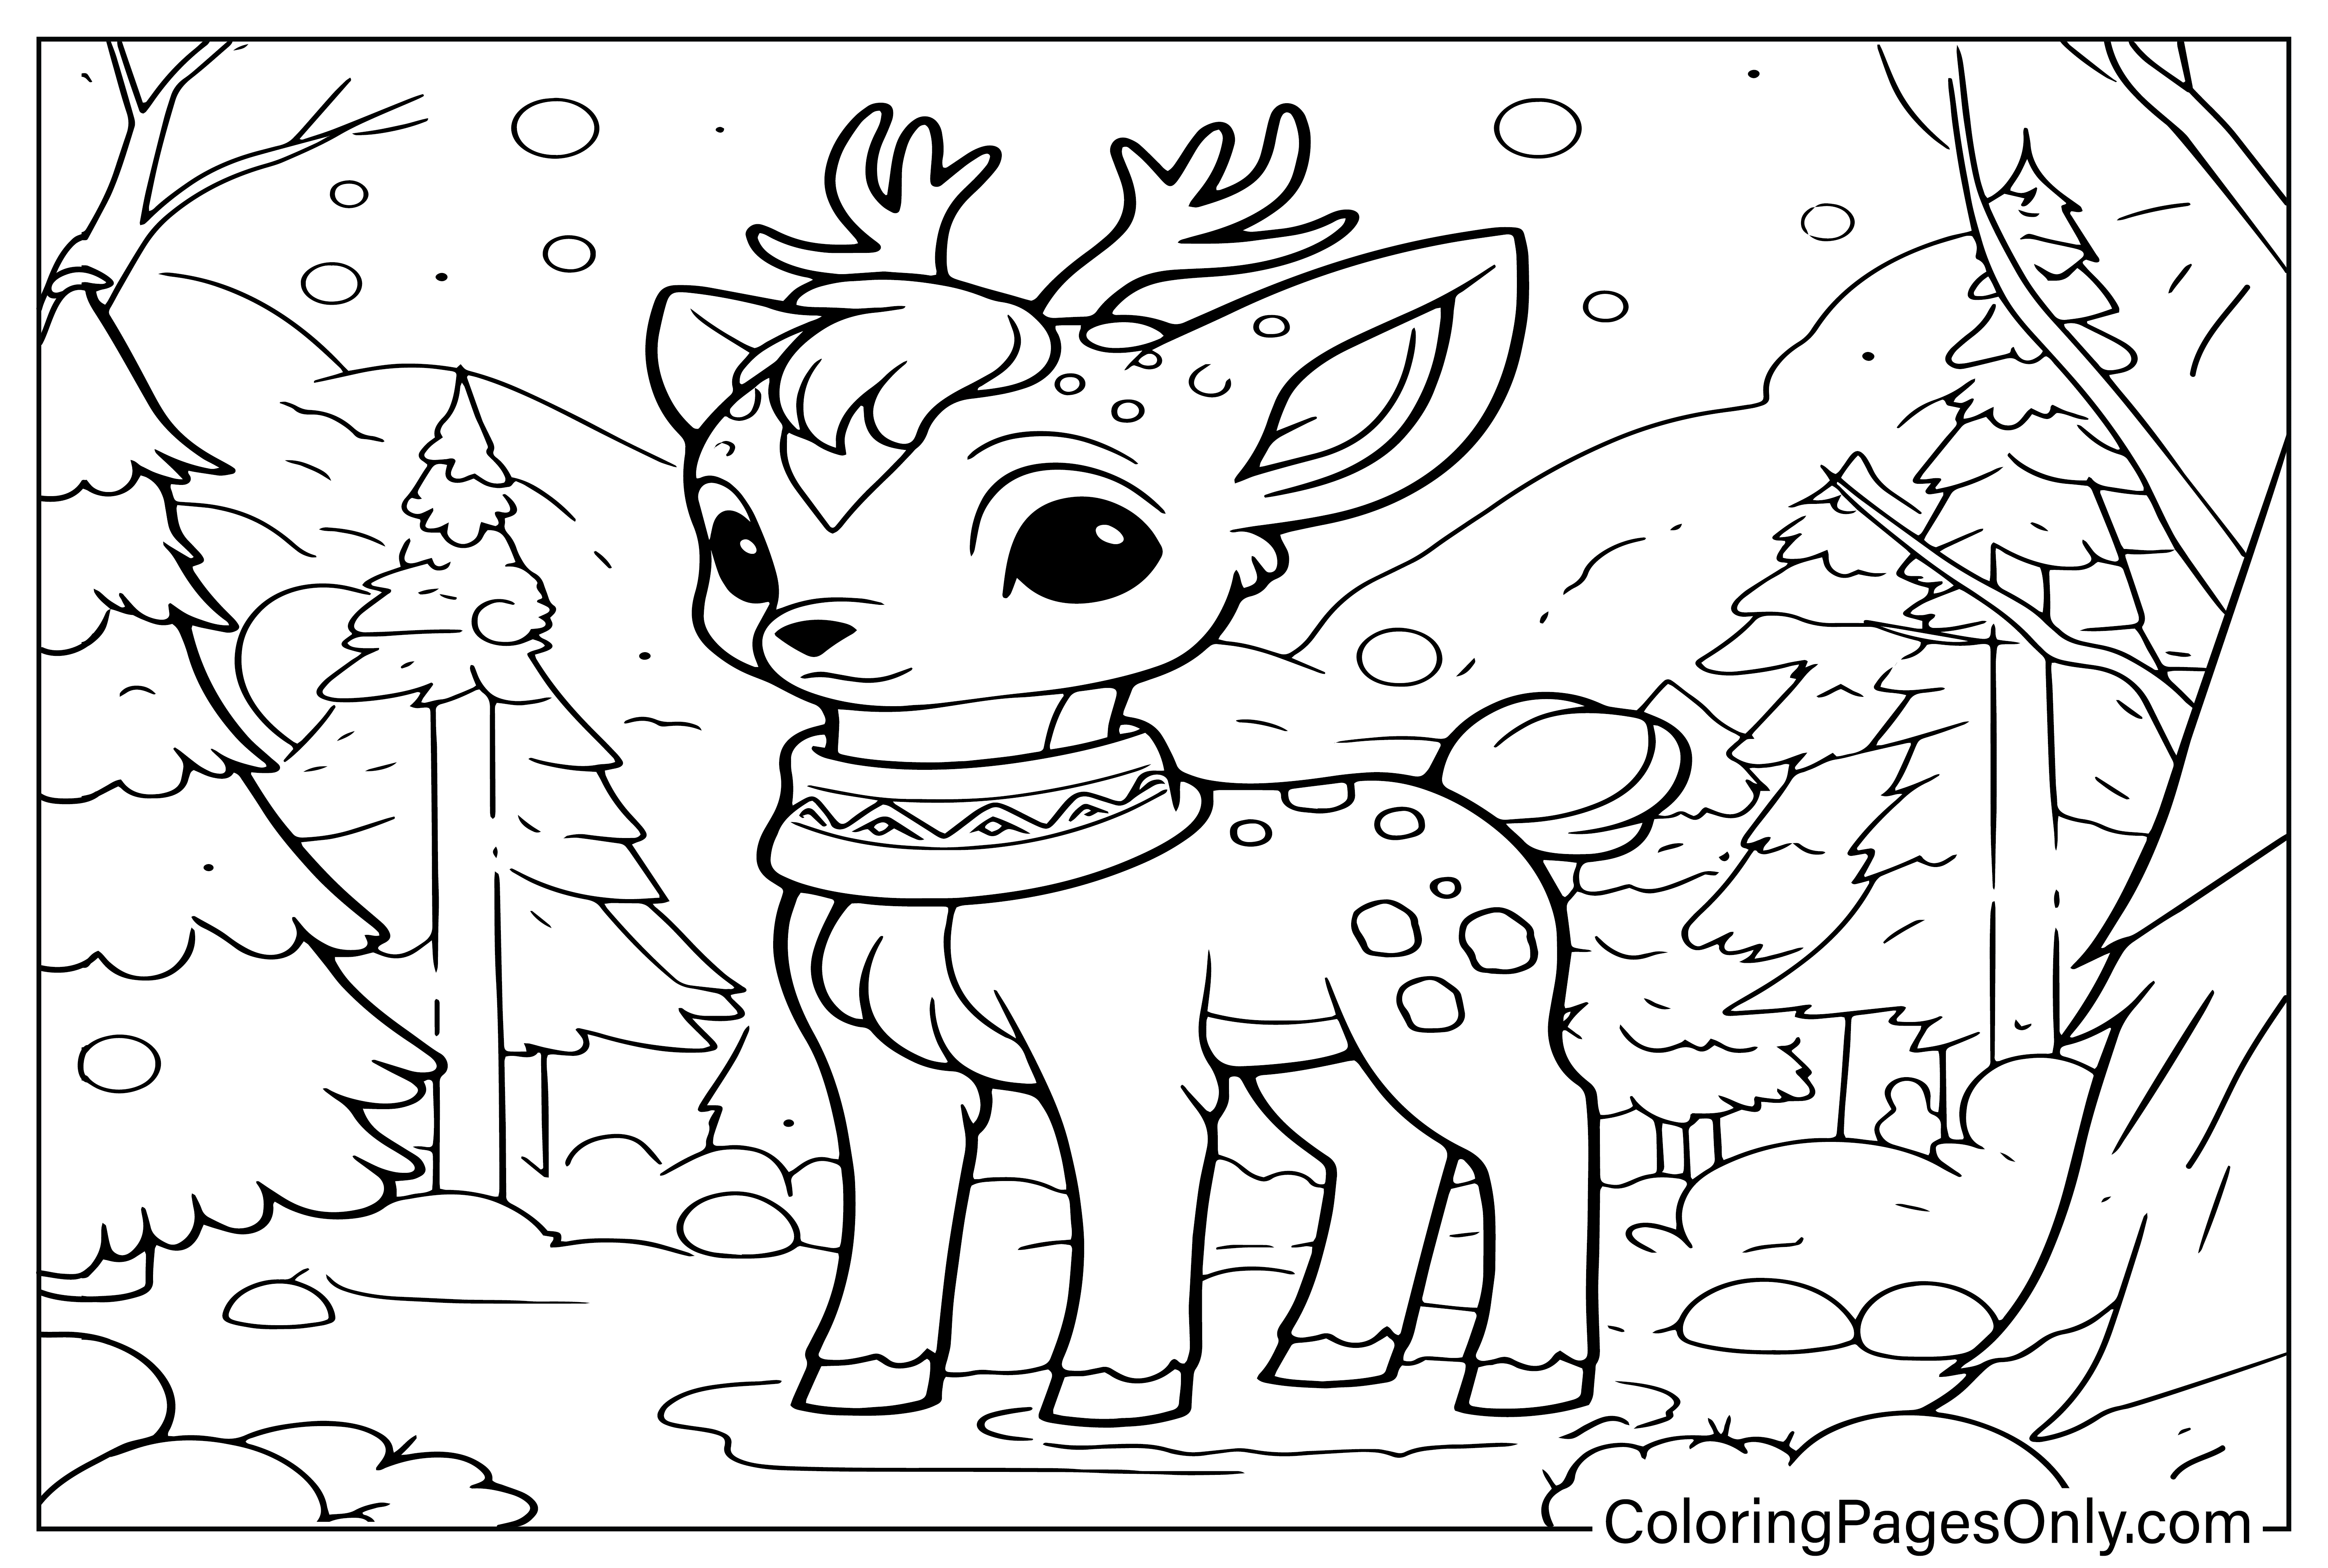 Cute Reindeer Coloring Page